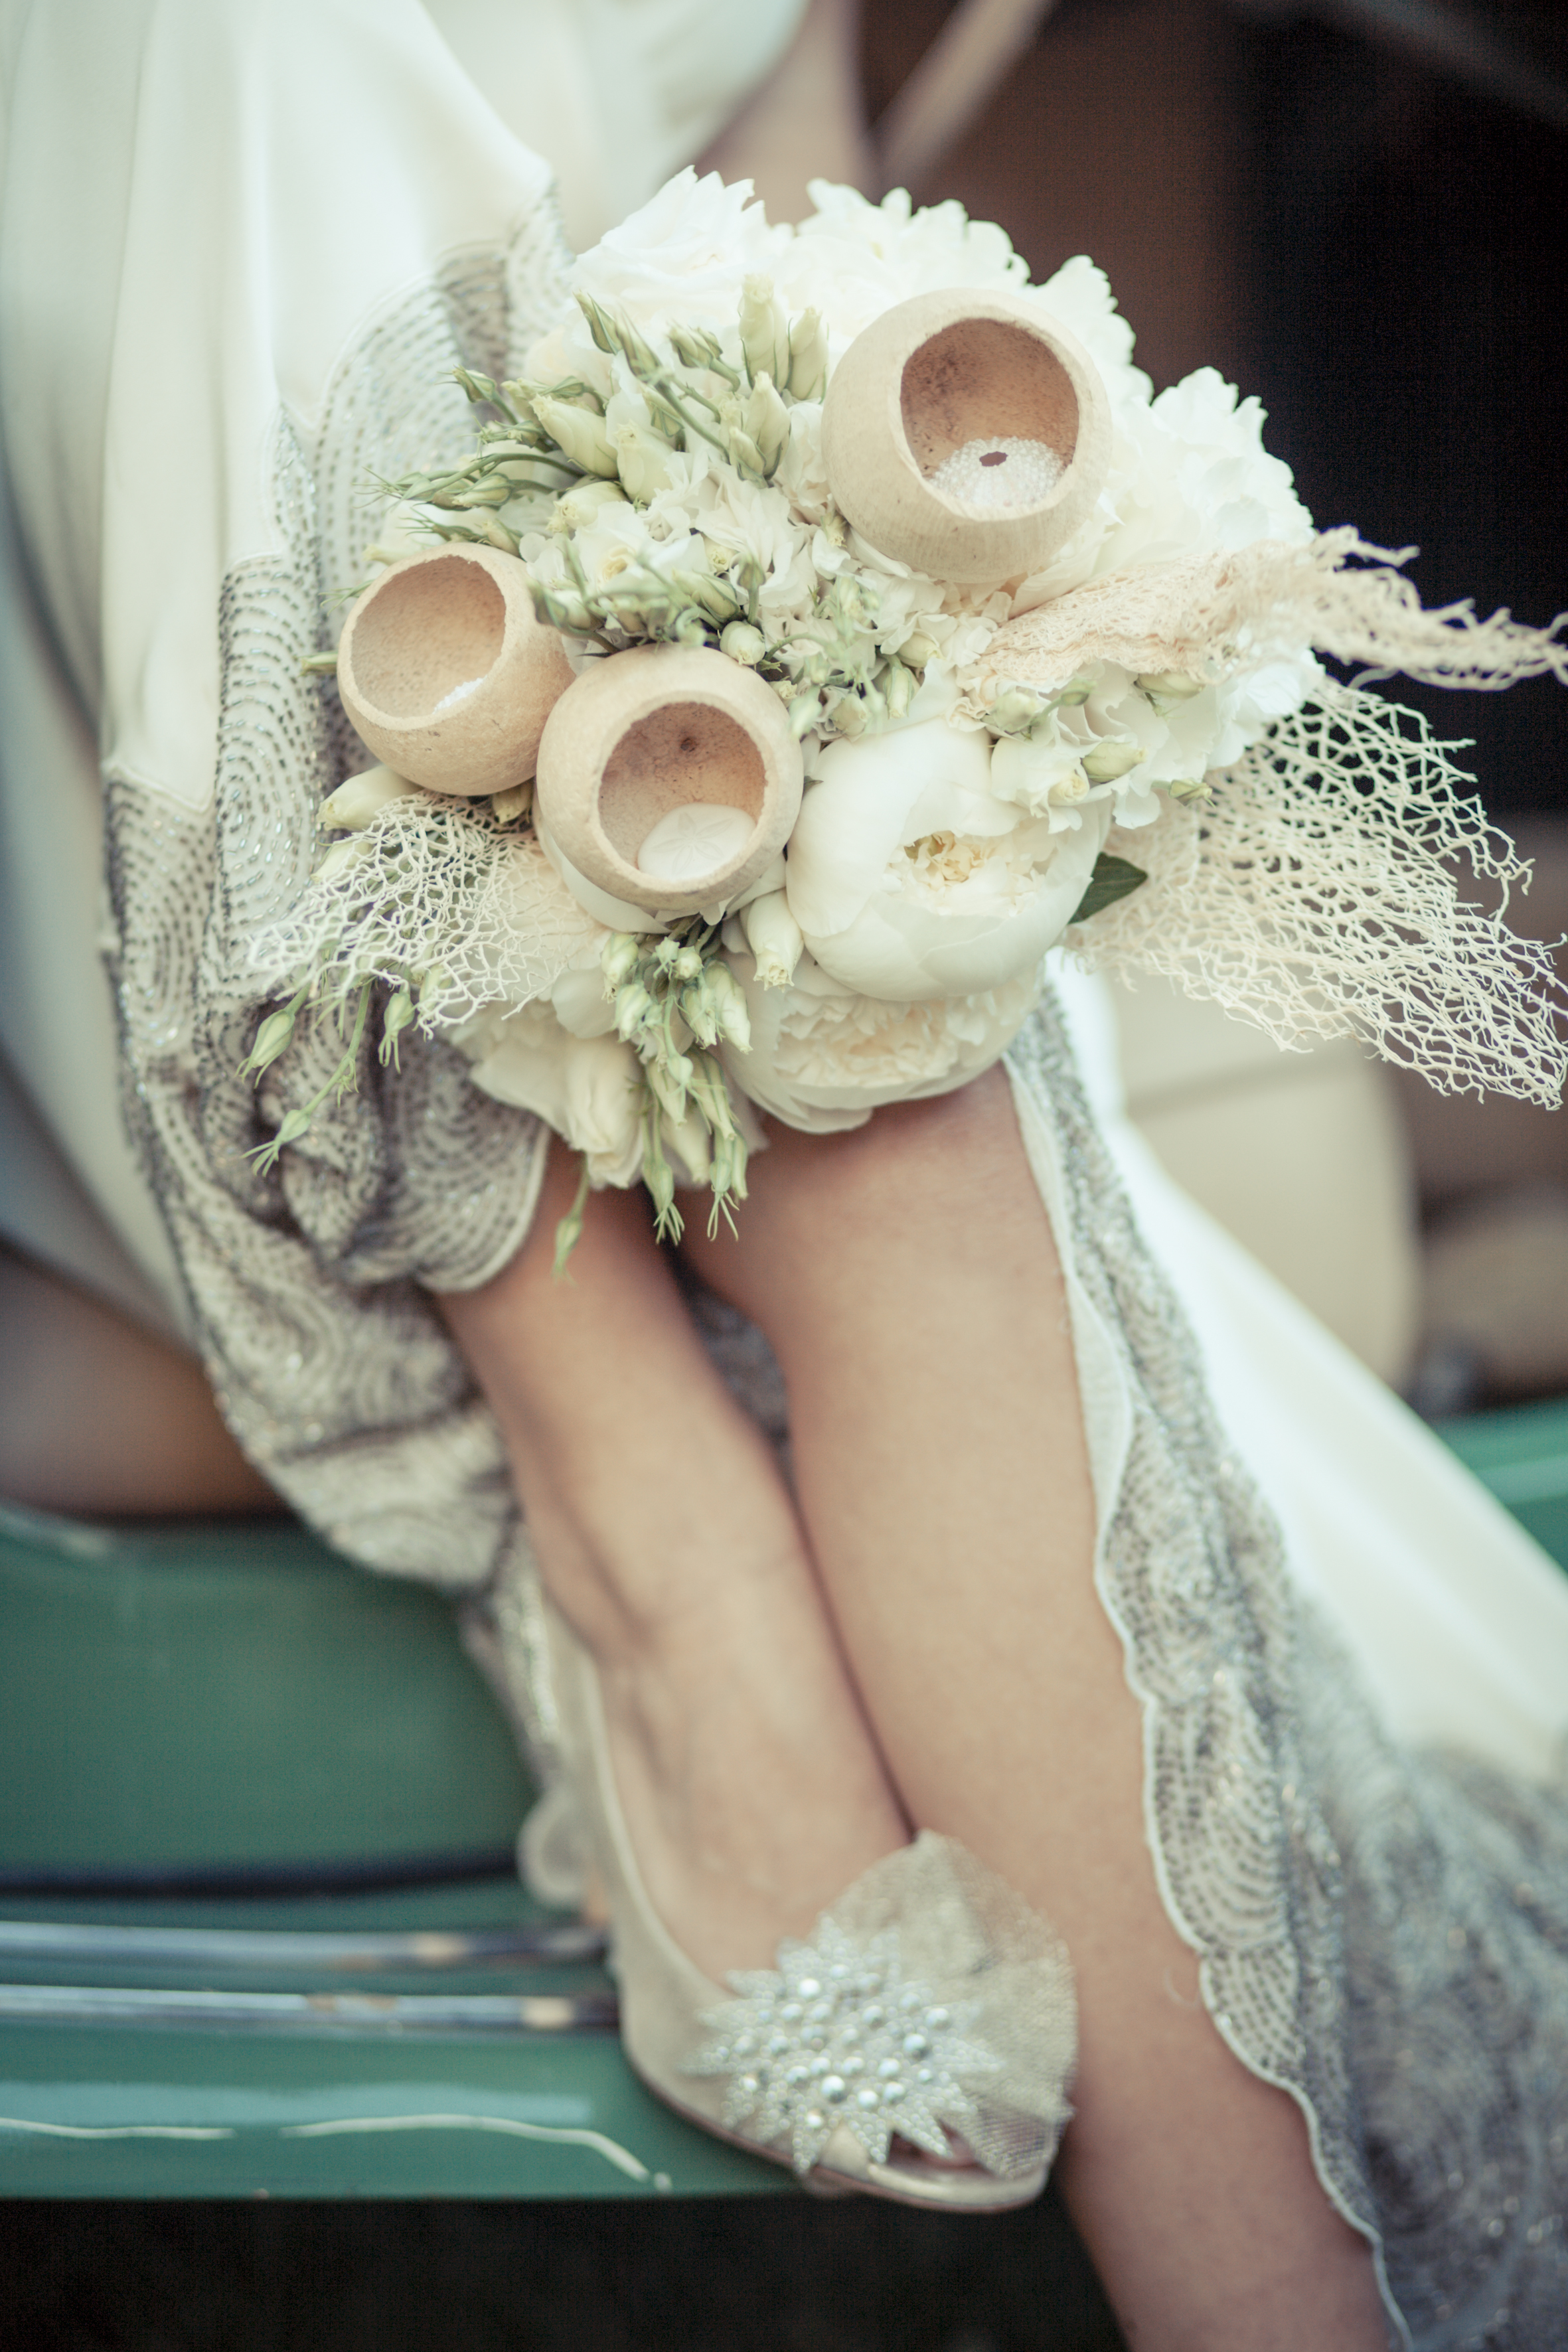 Detaljer som sko og smykker samt de små øjeblikke i løbet af dagen er meget vigtige at få med fra bryllupsdagen.